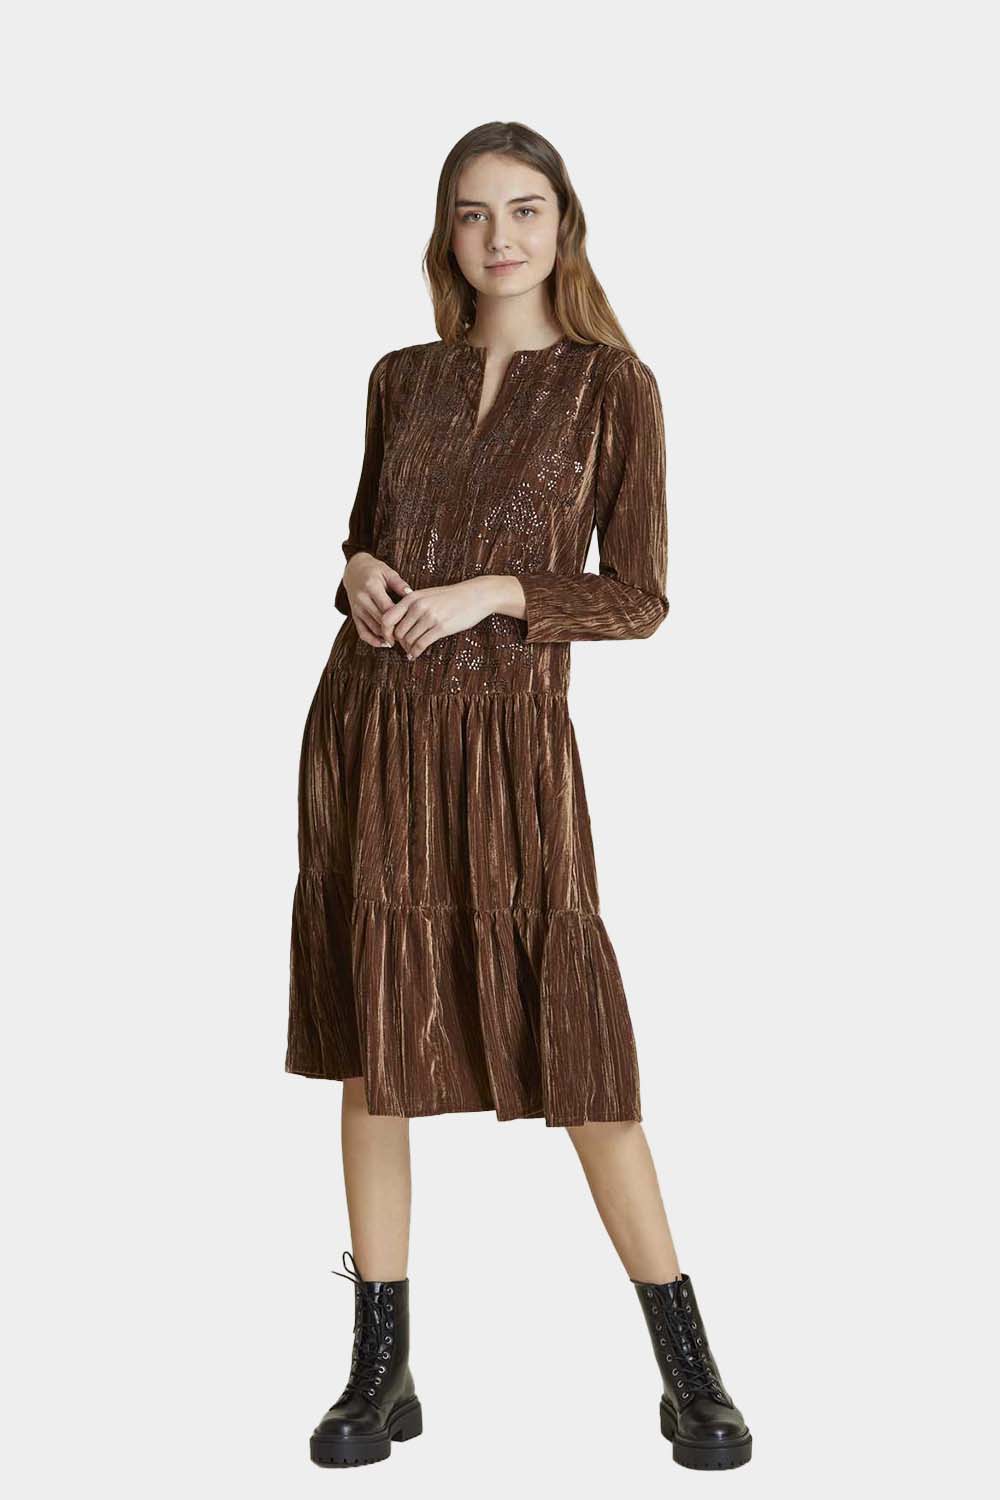 שמלת קטיפה לנשים פייטים RENE DERHY Vendome online | ונדום .